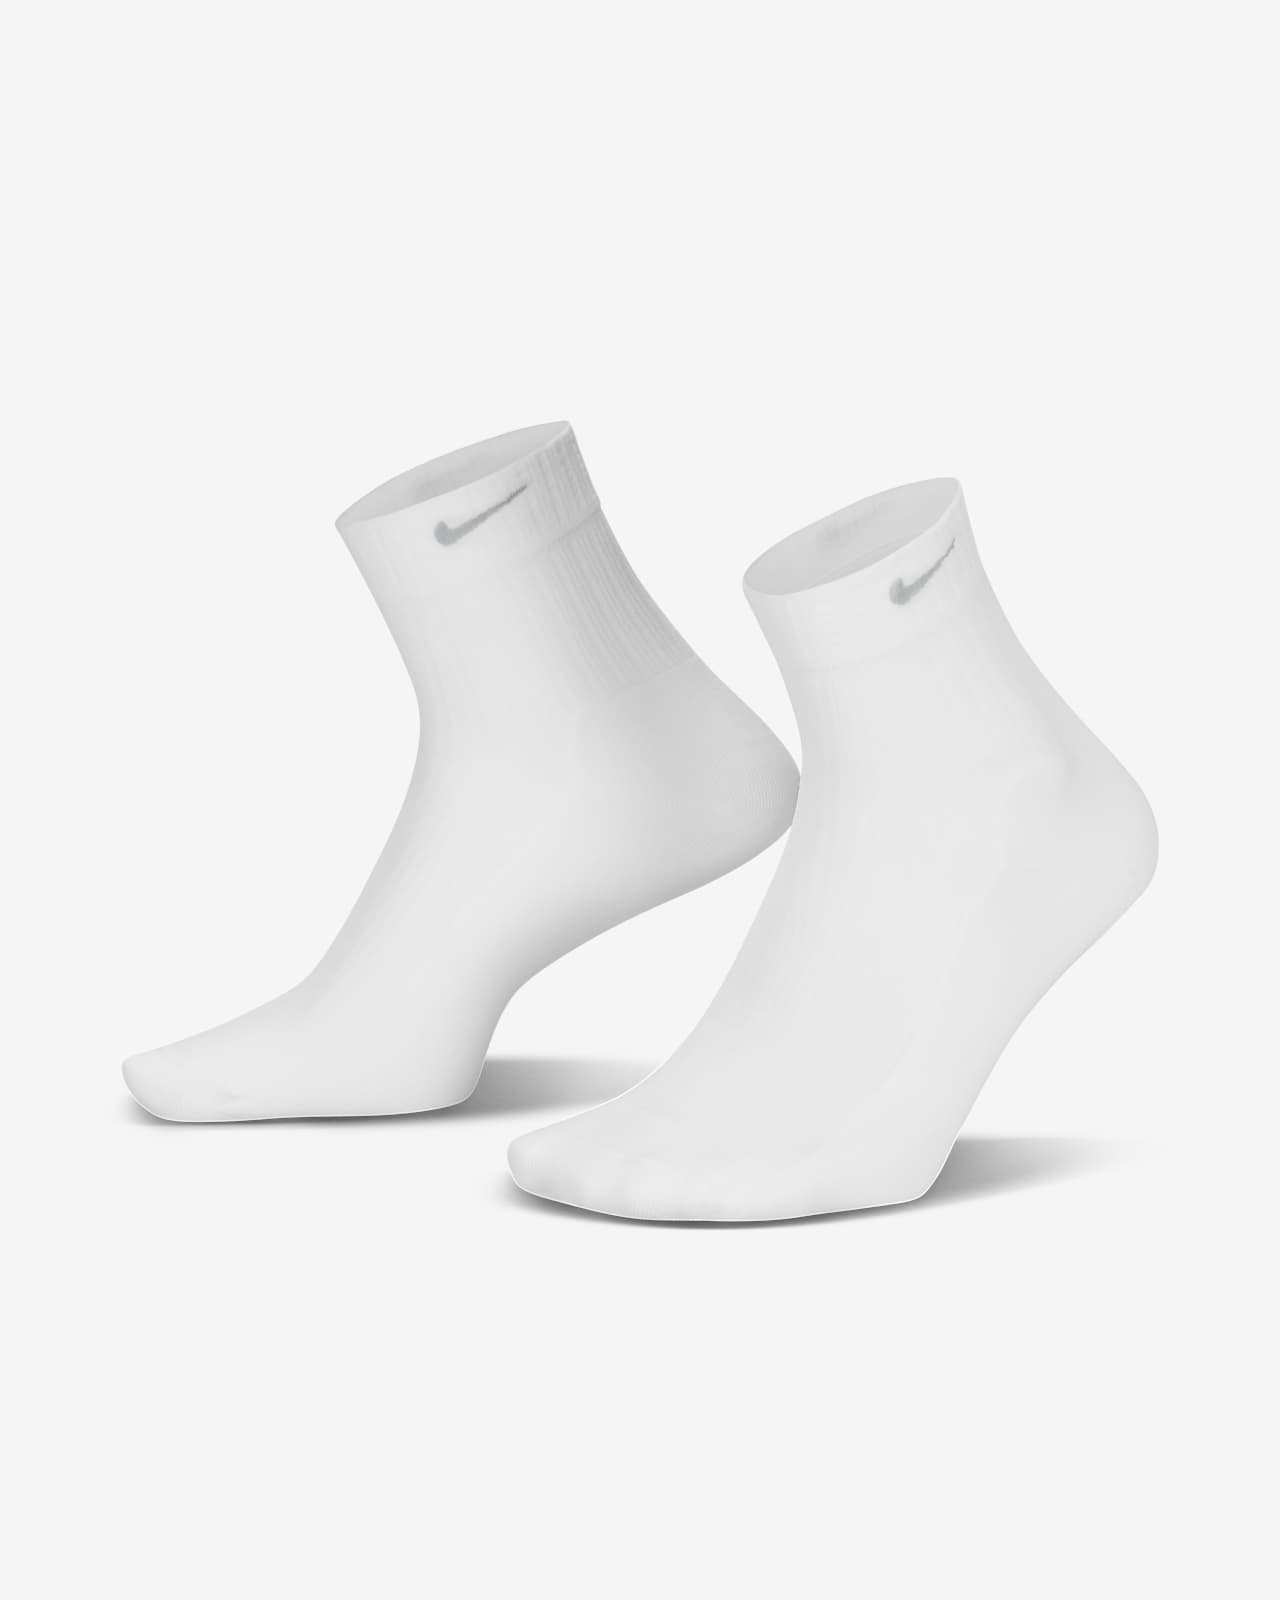 Nike Calcetines hasta el tobillo transparentes (1 par) - Mujer